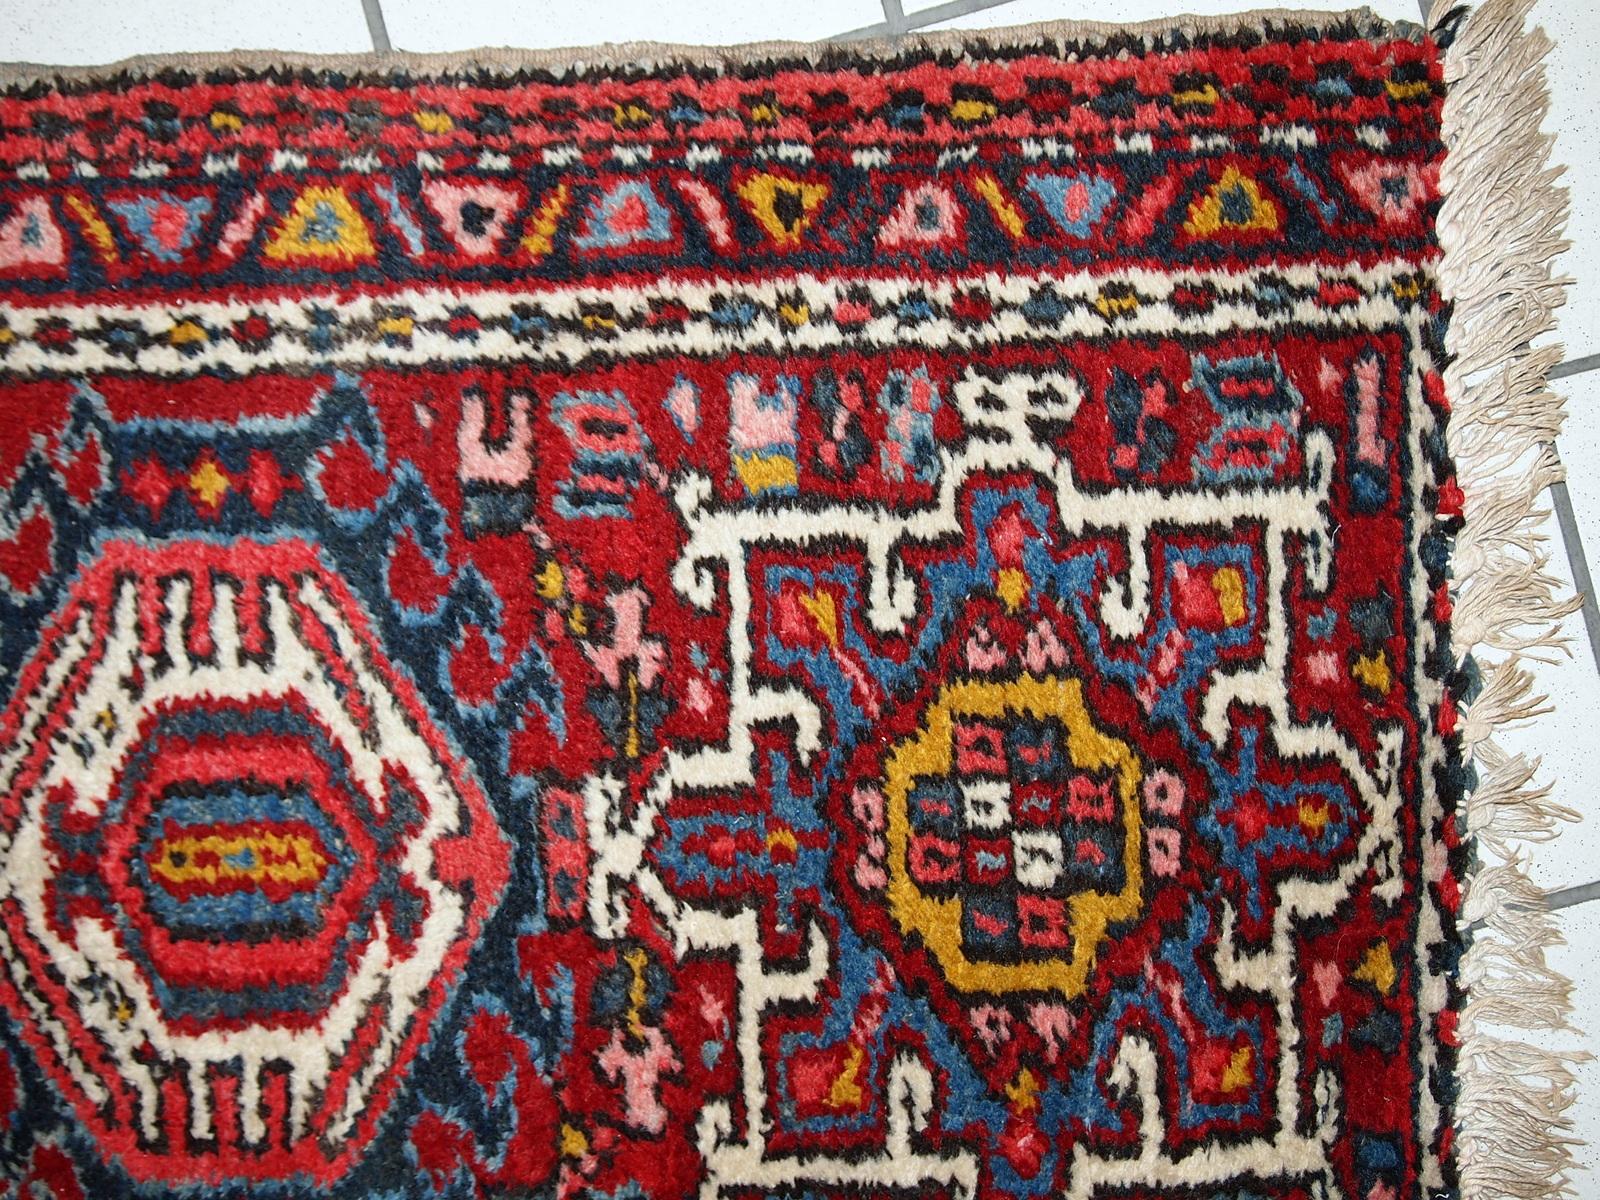 Tapis Karajeh ancien fait à la main en bon état d'origine. Il a été fabriqué au début du 20e siècle en laine rouge.

?-condition : original bon,

-vers les années 1920,

-taille : 2,1' x 3,6' (66cm x 110cm),

-matériau : laine,

-pays